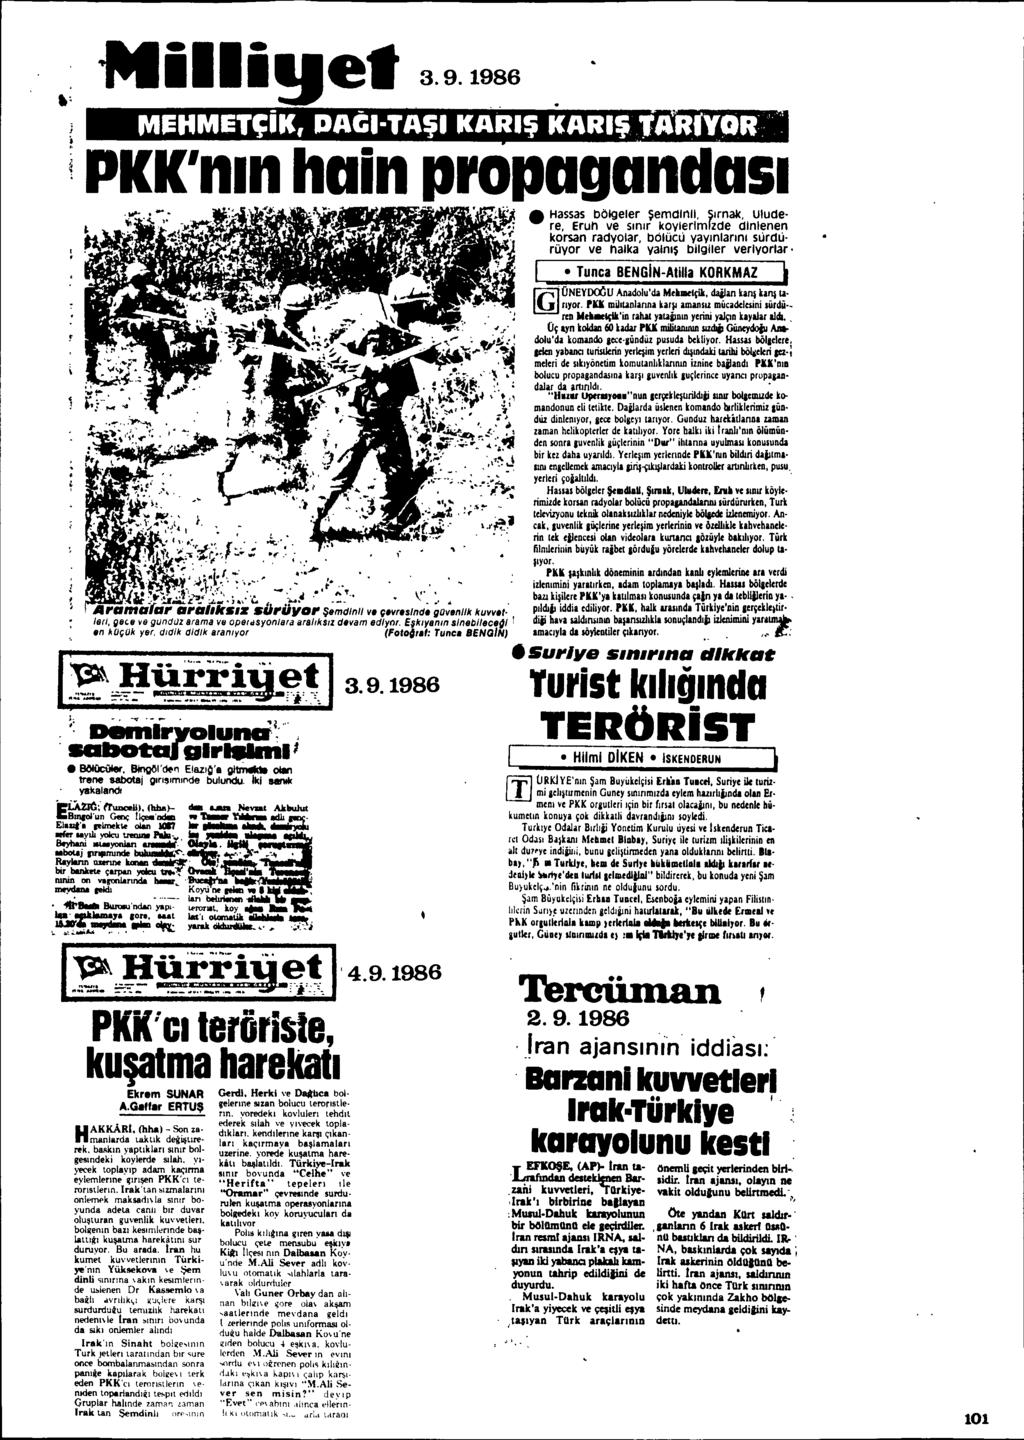 Nillige. 3.9.1986 PKK'nlnhain propagandasi ~ ':.-r<j. 3.9.1986 Hassas böigeier ~emdlnll, Sirnal<, Ulude. re, Eruh ve Slnlr koylerlm[zde dlnlenen korsan radyolar, bcilücli yaylnlanni slirdli.